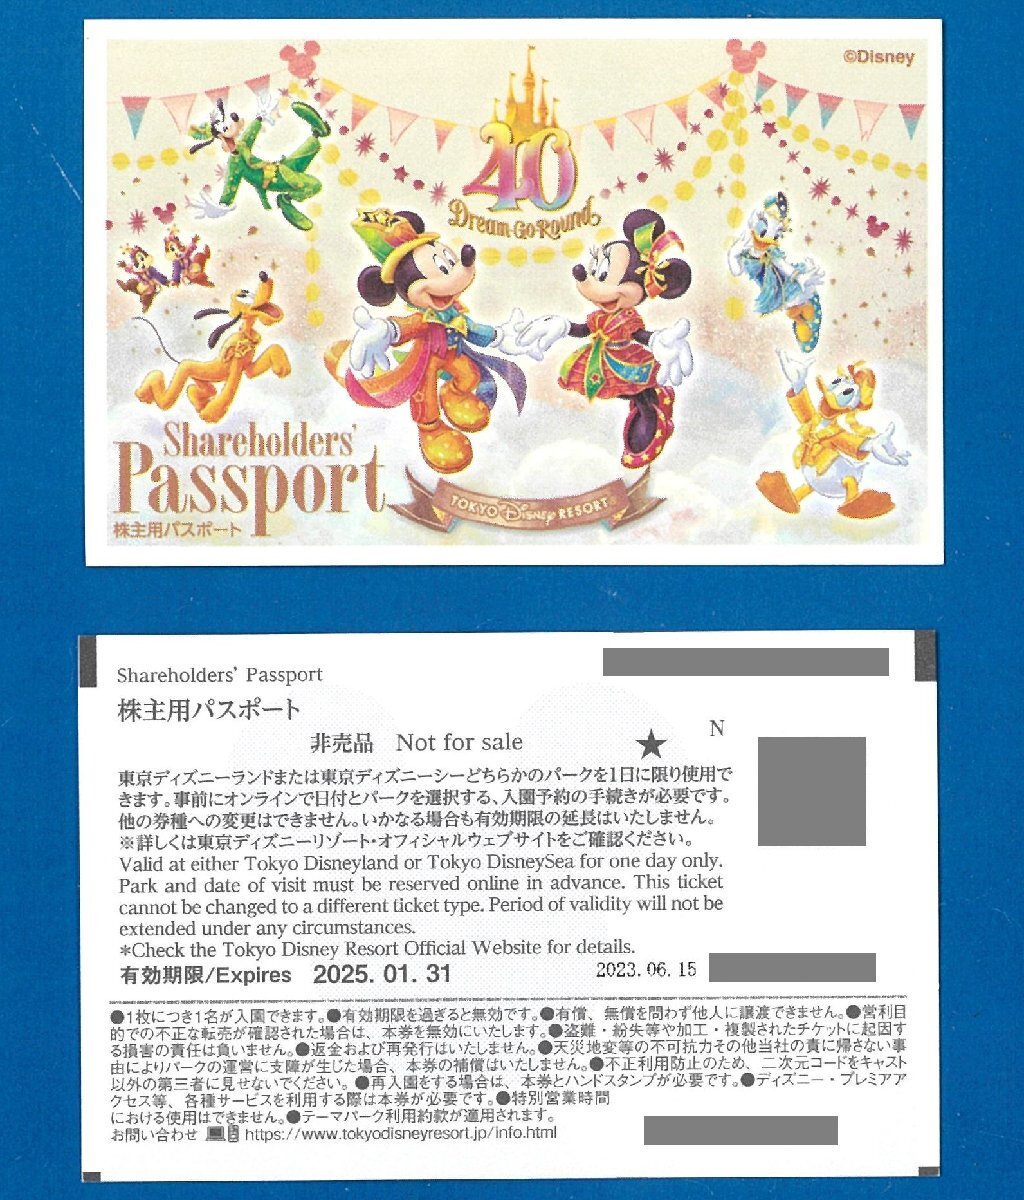 ☆H 即決あり： 東京ディズニーランド/東京ディズニーシー パスポート 8枚セット 2025.1.31迄 普通郵便無料 オリエンタルランド株主優待_画像は１枚の表裏です